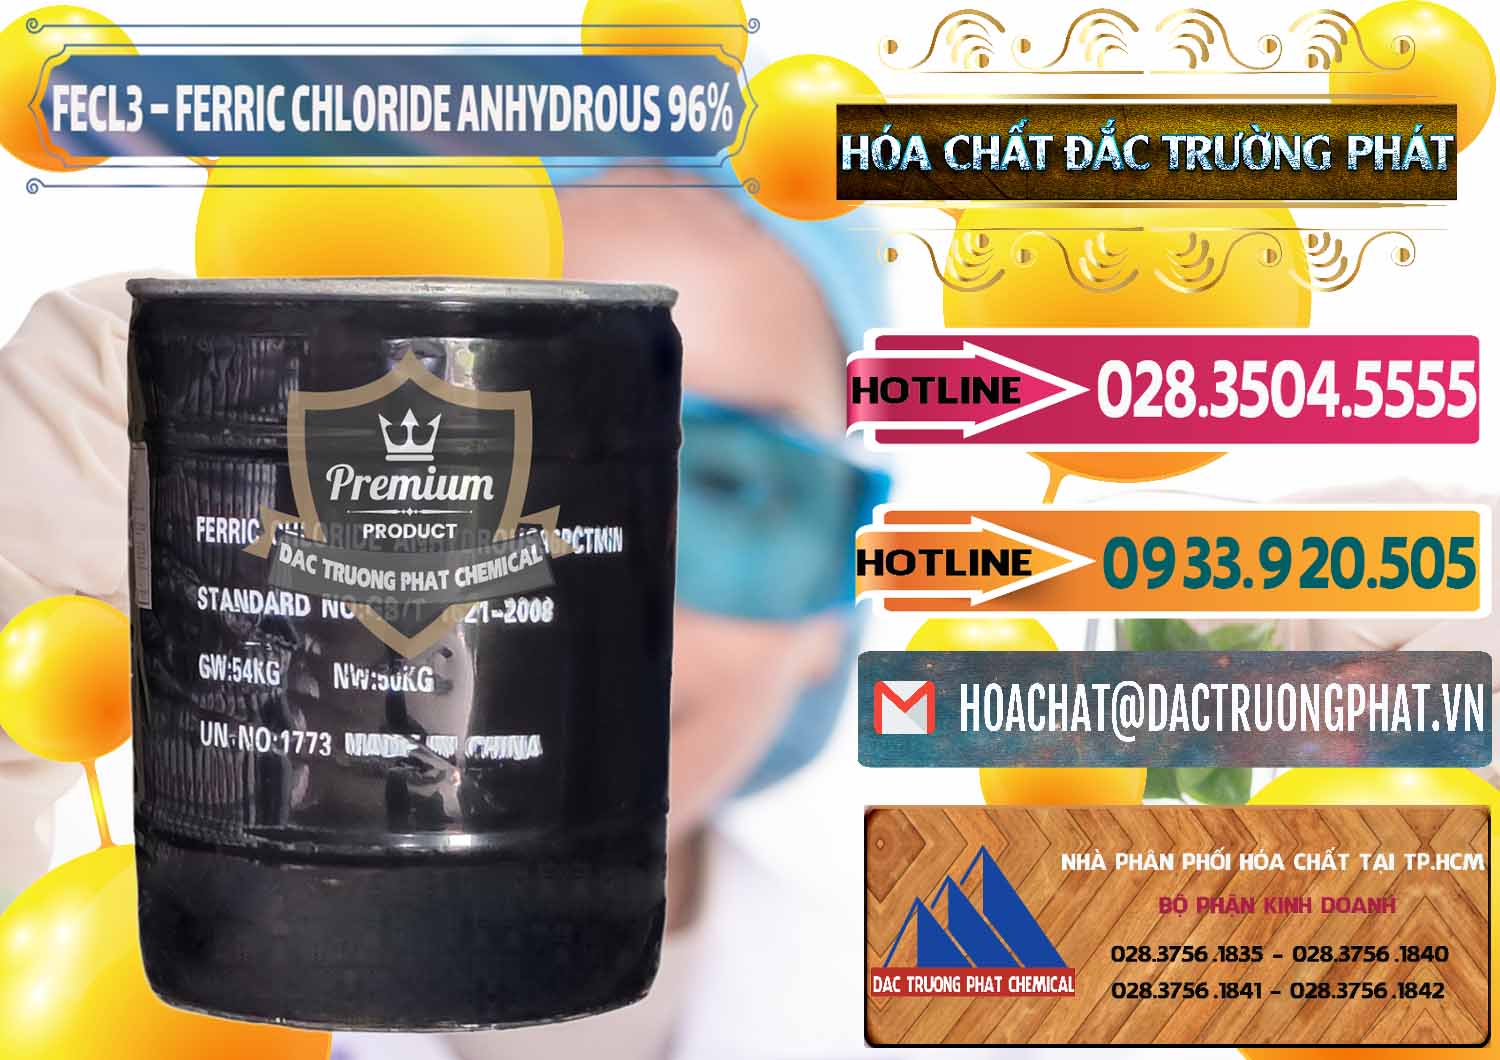 Bán - cung ứng FECL3 – Ferric Chloride Anhydrous 96% Trung Quốc China - 0065 - Công ty phân phối và cung ứng hóa chất tại TP.HCM - dactruongphat.vn